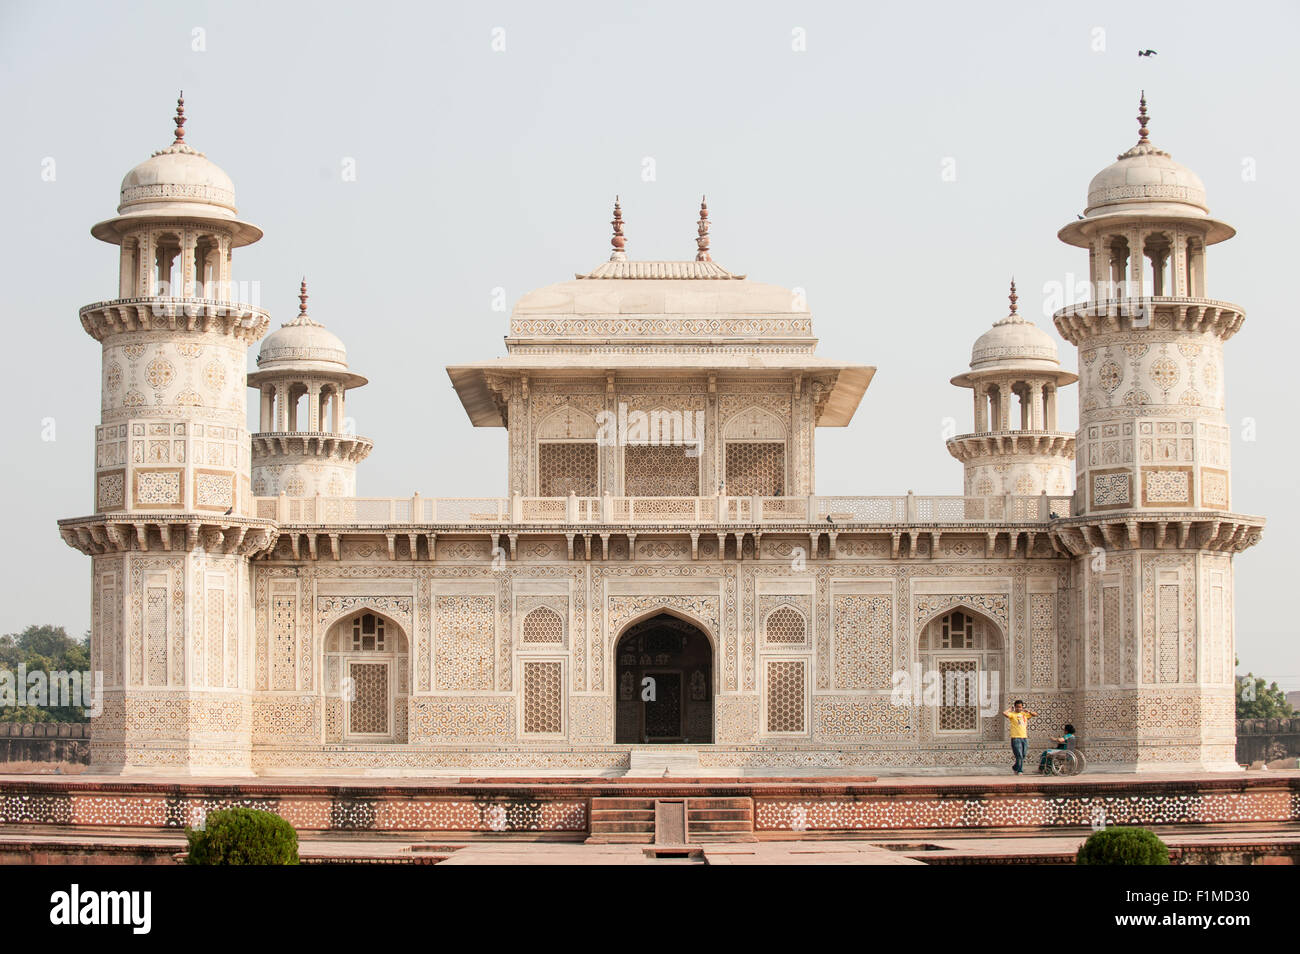 Agra, Utar Pradesh, Indien. Baby Taj. Atemberaubender Architektur mit fein detaillierten parchin Kari Halbedelstein inlay Arbeit und gepiercte Gitter Jali Bildschirme in weißem Marmor geschnitzt. Stockfoto